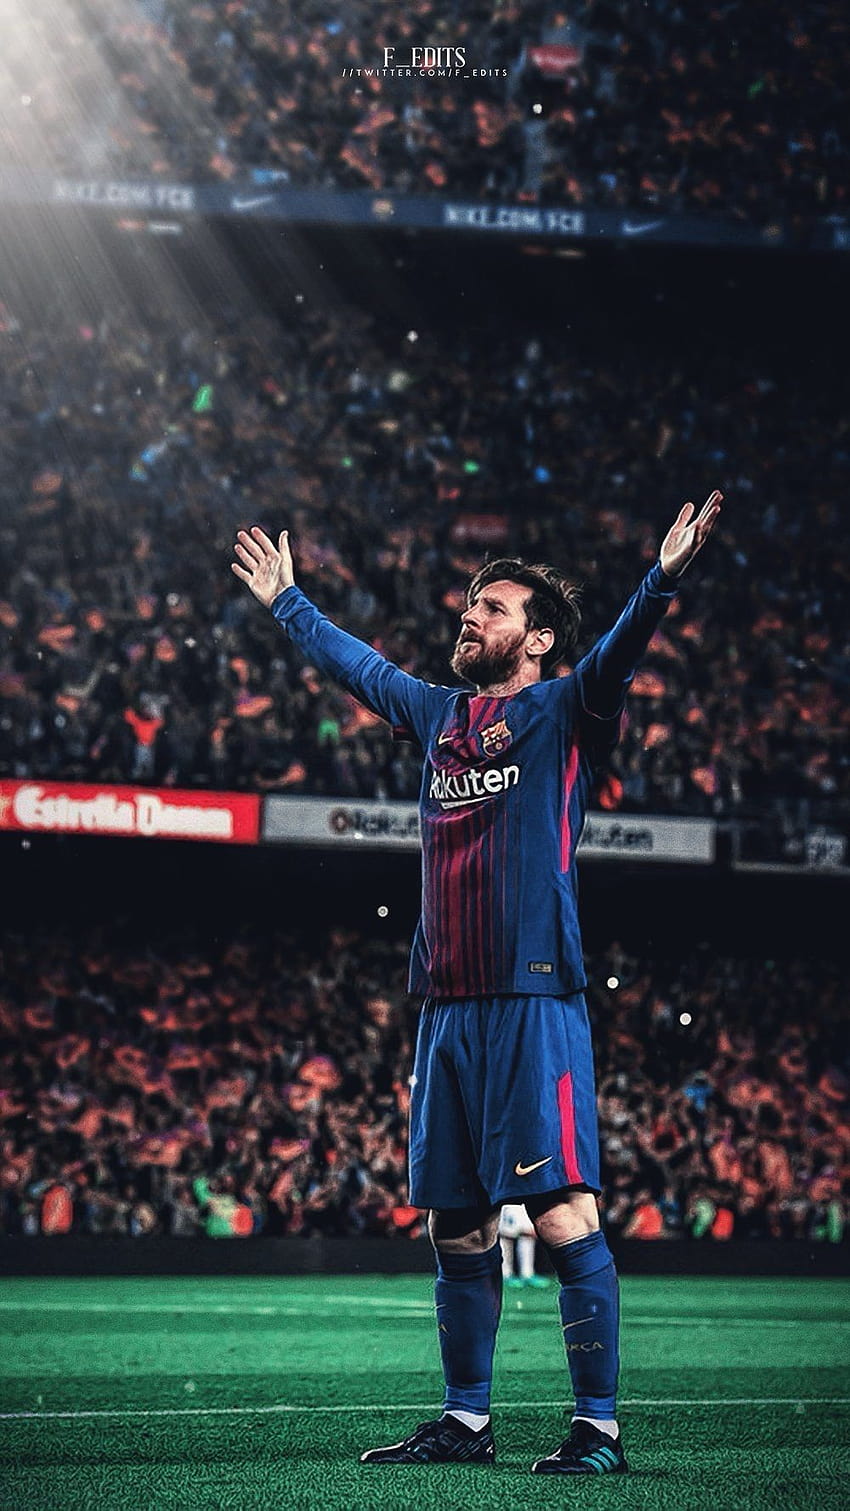 Messi - Lionel Messi luôn là một cầu thủ ấn tượng và được đánh giá cao trong làng bóng đá thế giới. Với kĩ thuật điêu luyện, tốc độ vượt trội và khả năng ghi bàn đáng kinh ngạc, Messi đích thân dẫn dắt Barcelona đến những chiến thắng đầy ấn tượng. Hãy xem hình ảnh của anh để hiểu thêm về tài năng của Messi.